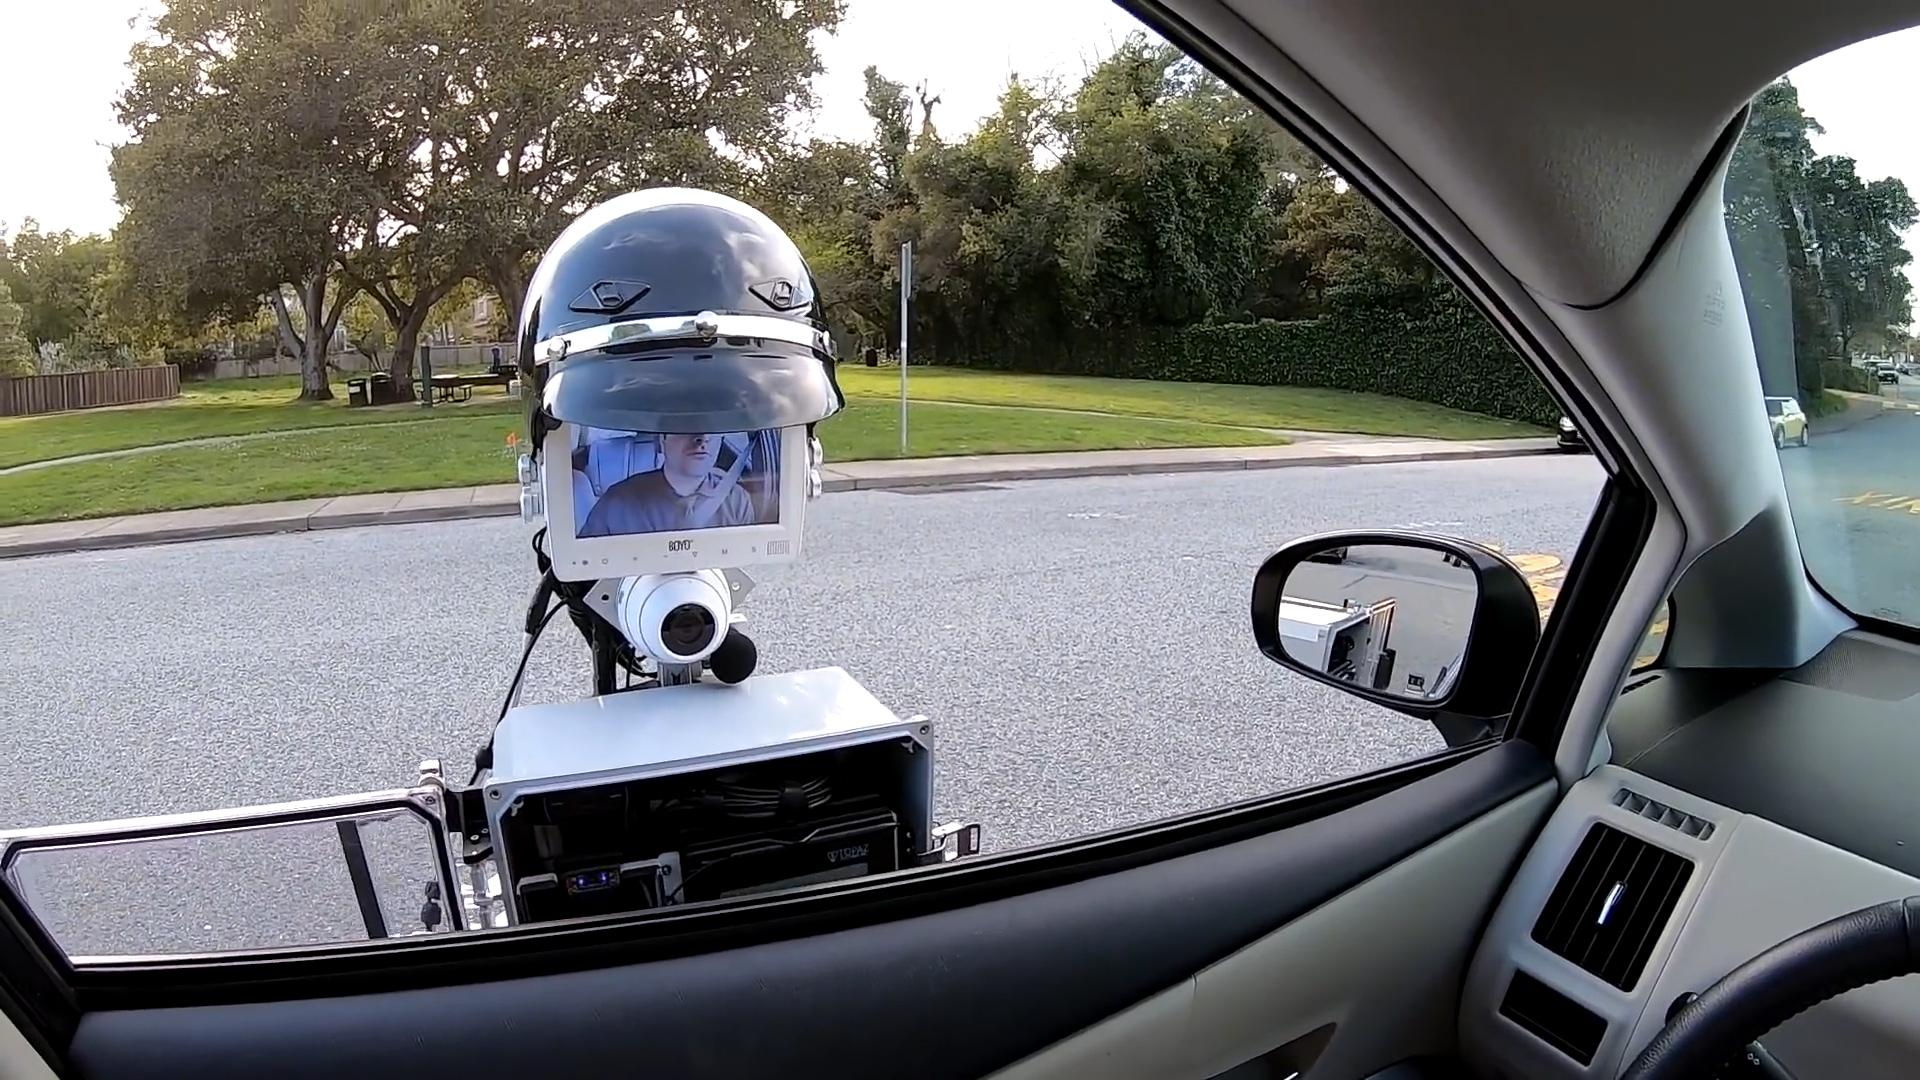 “بالفيديو” شاهد الروبوت الشرطي أثناء إصداره مخالفة مرورية